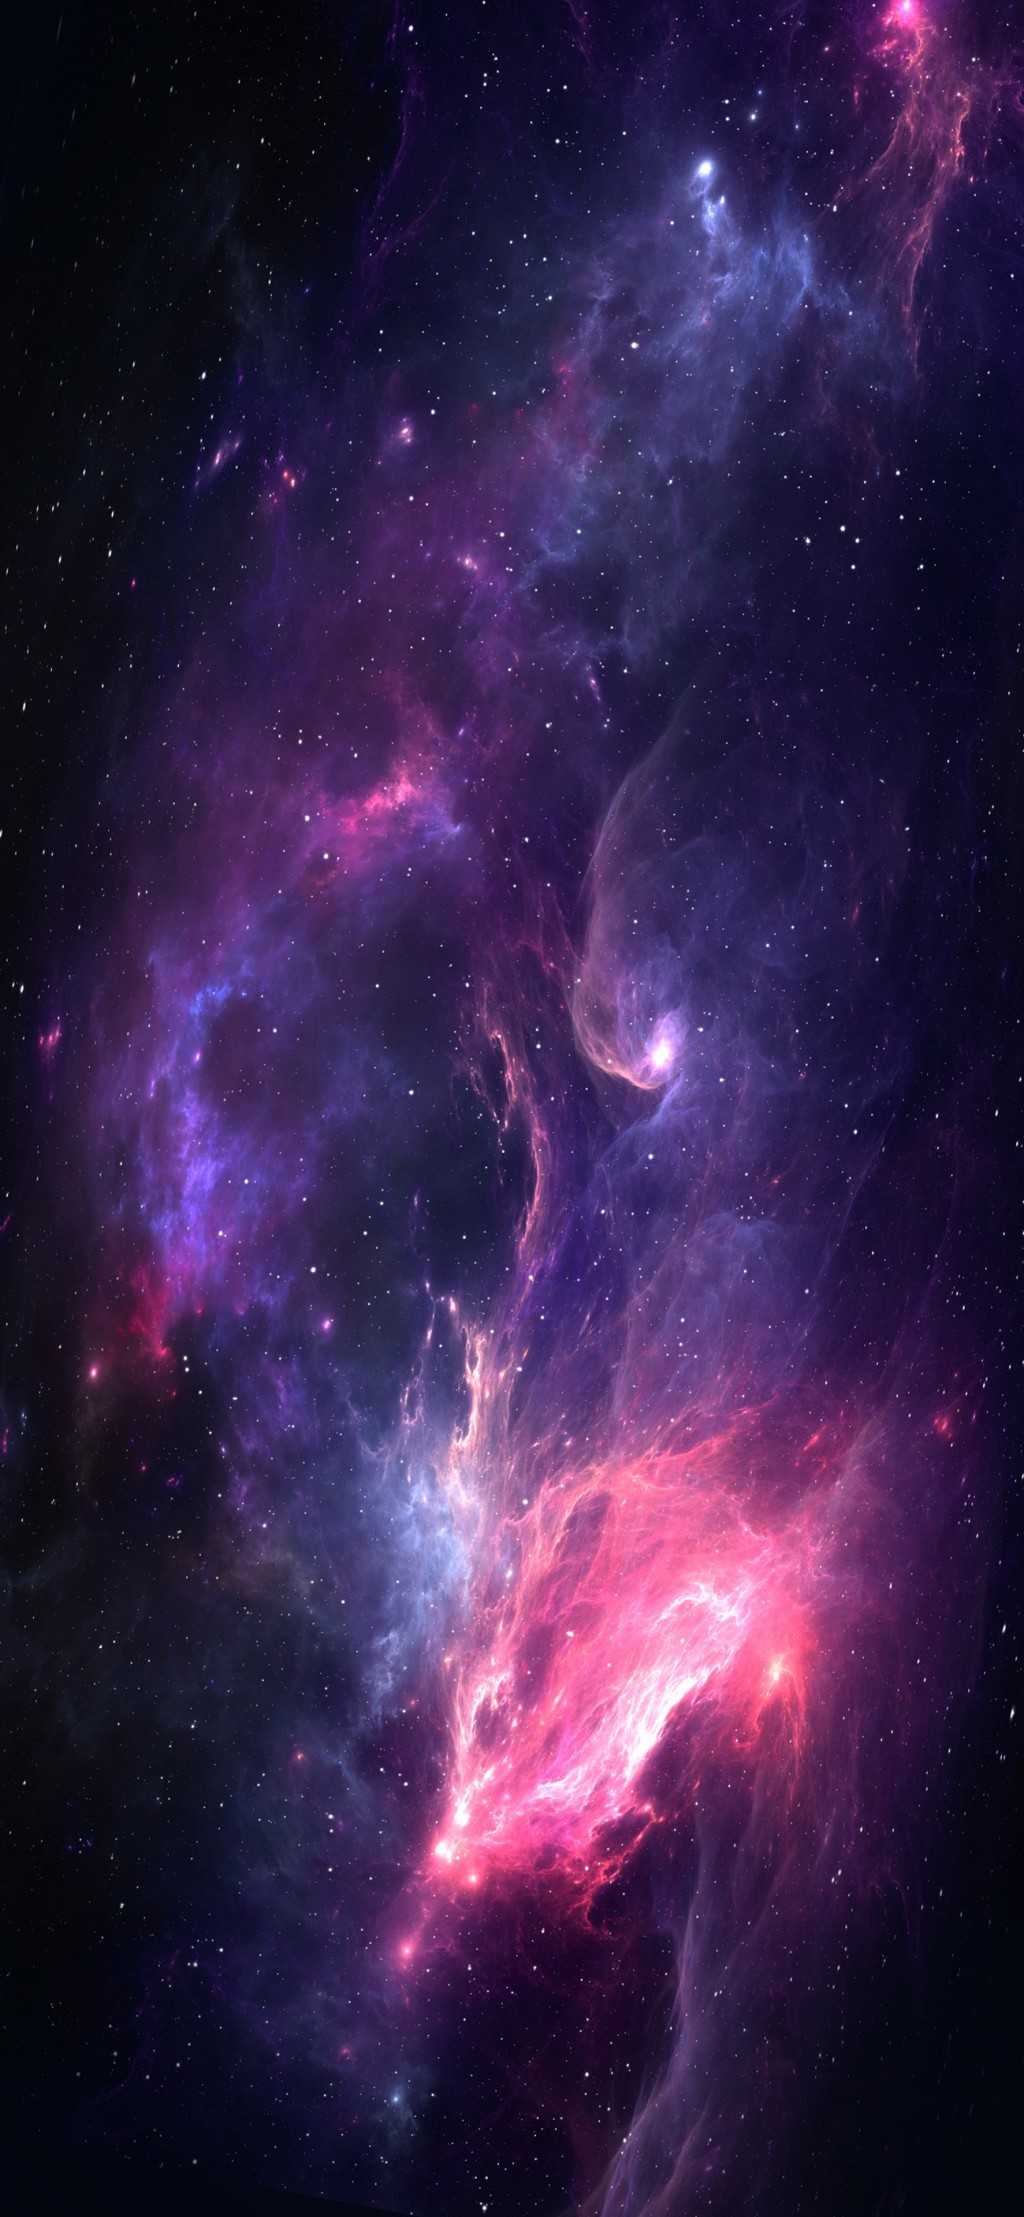 暗紫色系列梦幻风景手机壁纸